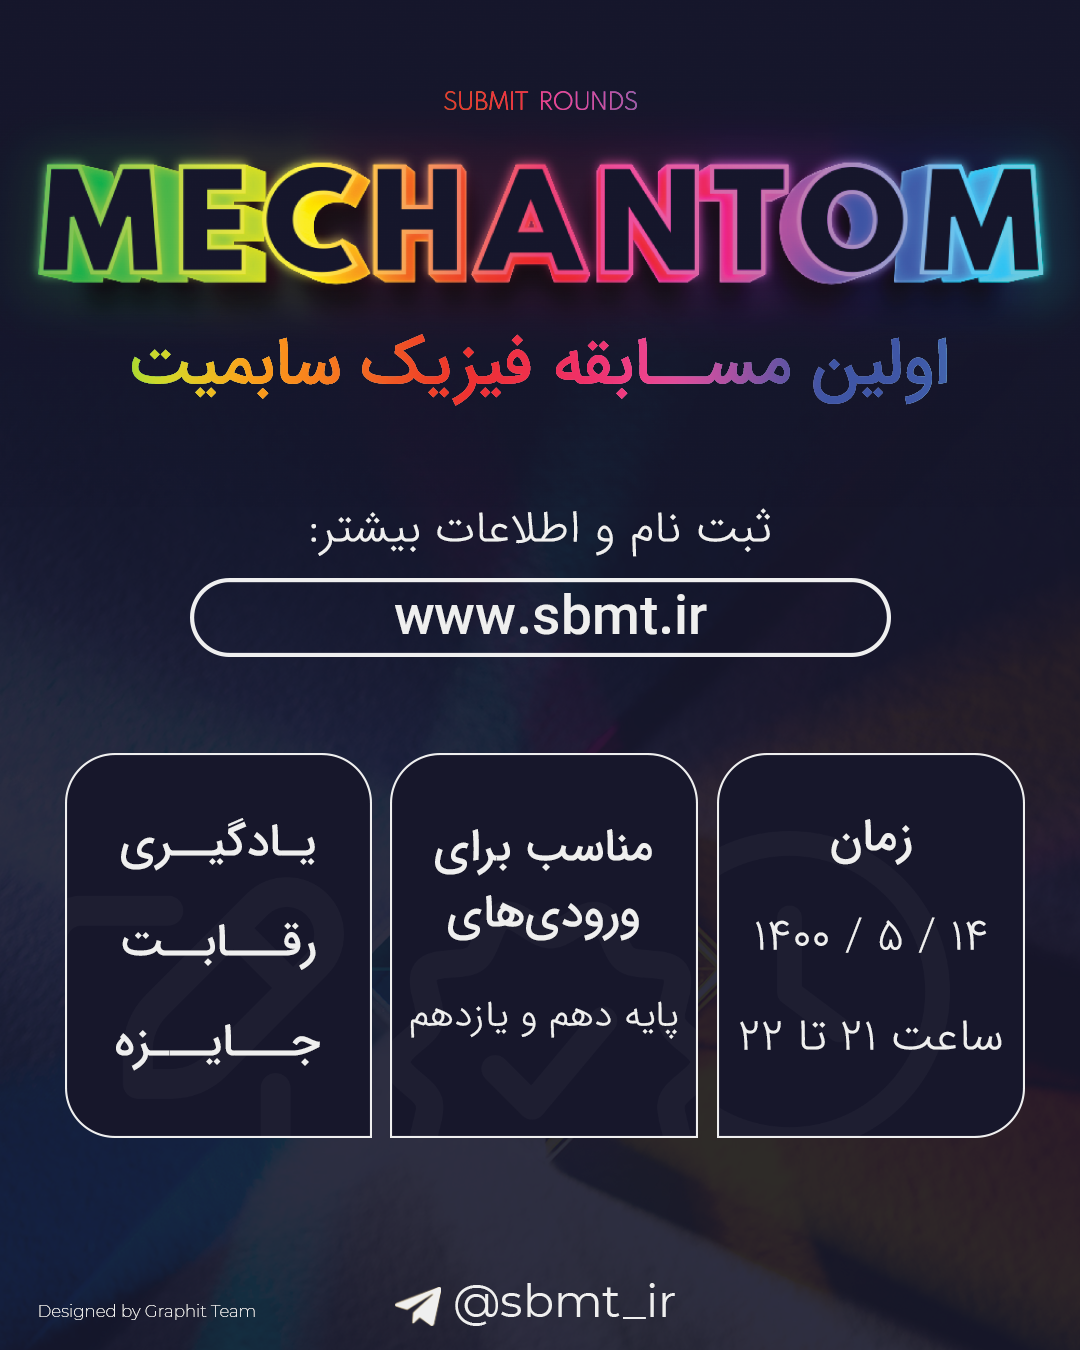 Mechantom